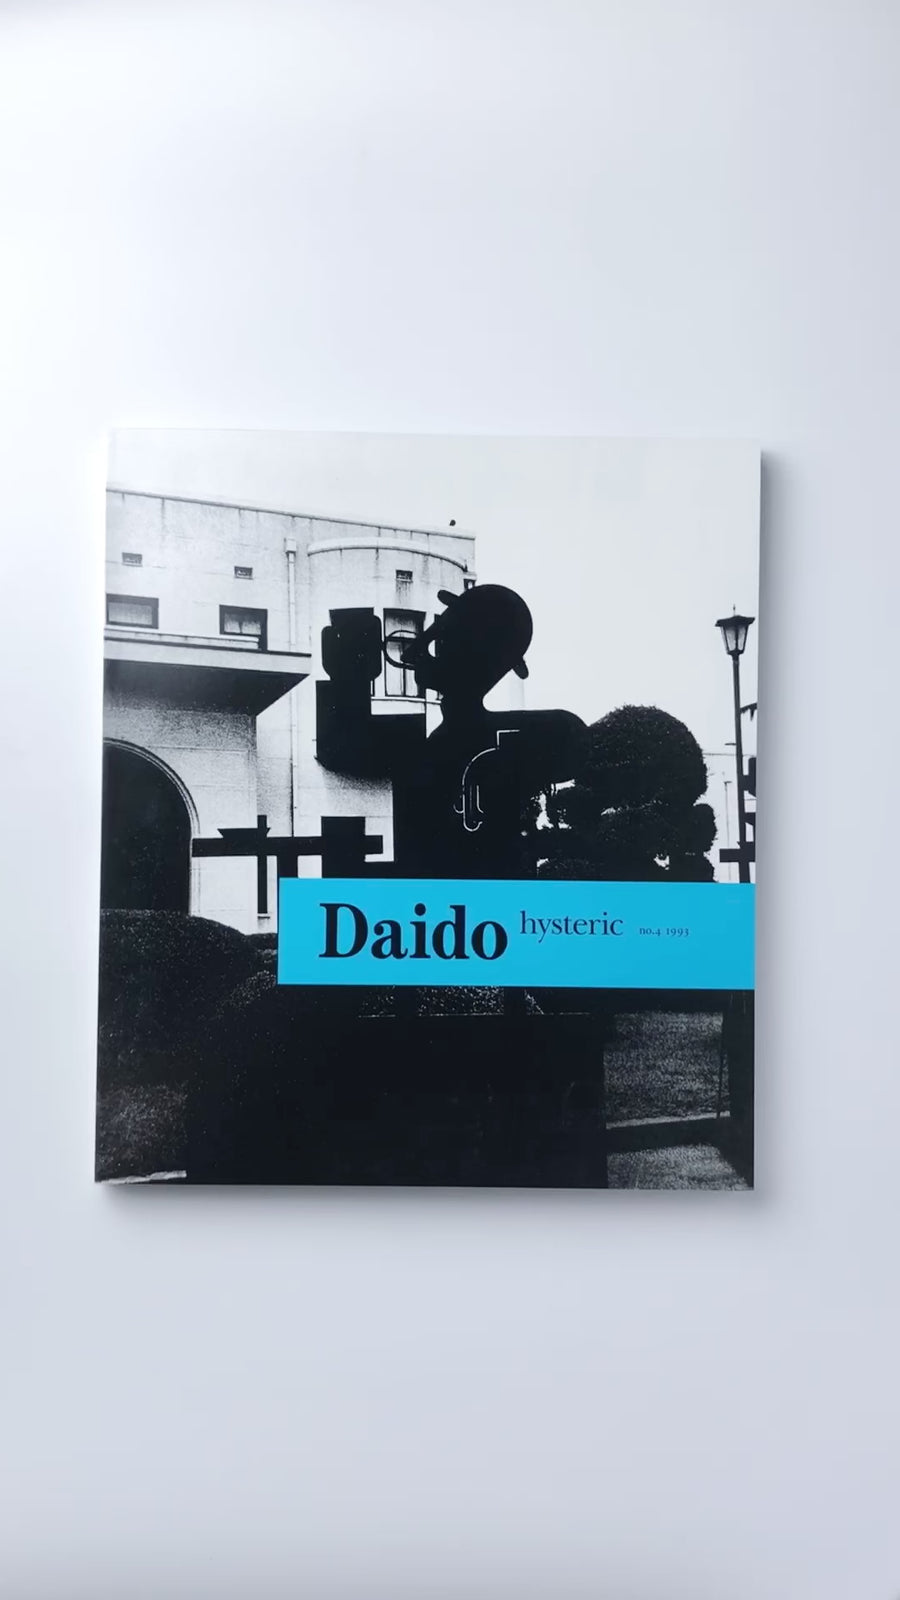 (復刻版) Daido hysteric no.4 by 森山大道